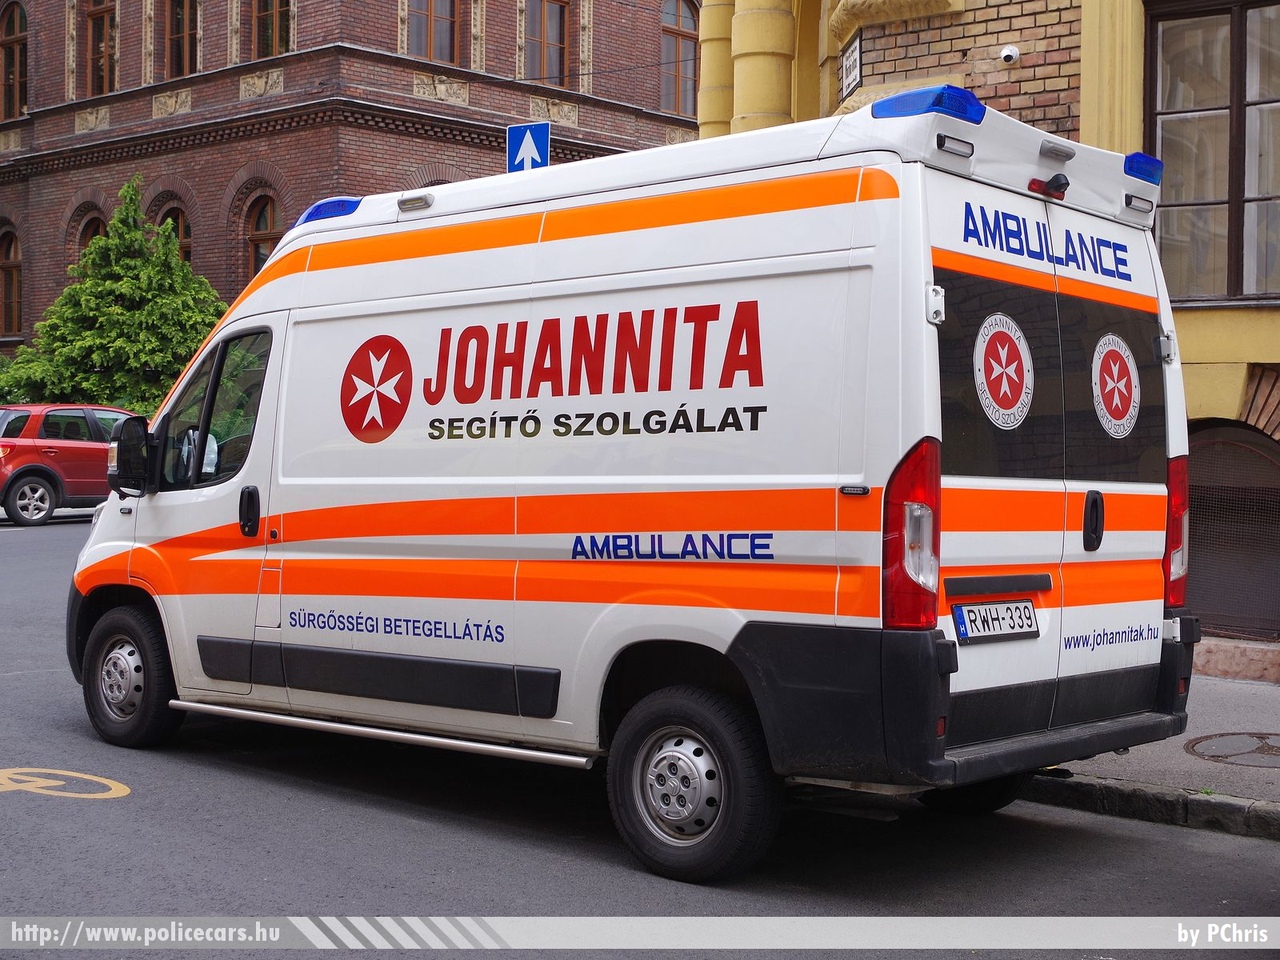 Citroen Jumper, Johannita Segítõ Szolgálat, fotó: PChris
Keywords: mentő mentőautó magyar Magyarország hungarian Hungary ambulance RWH-339